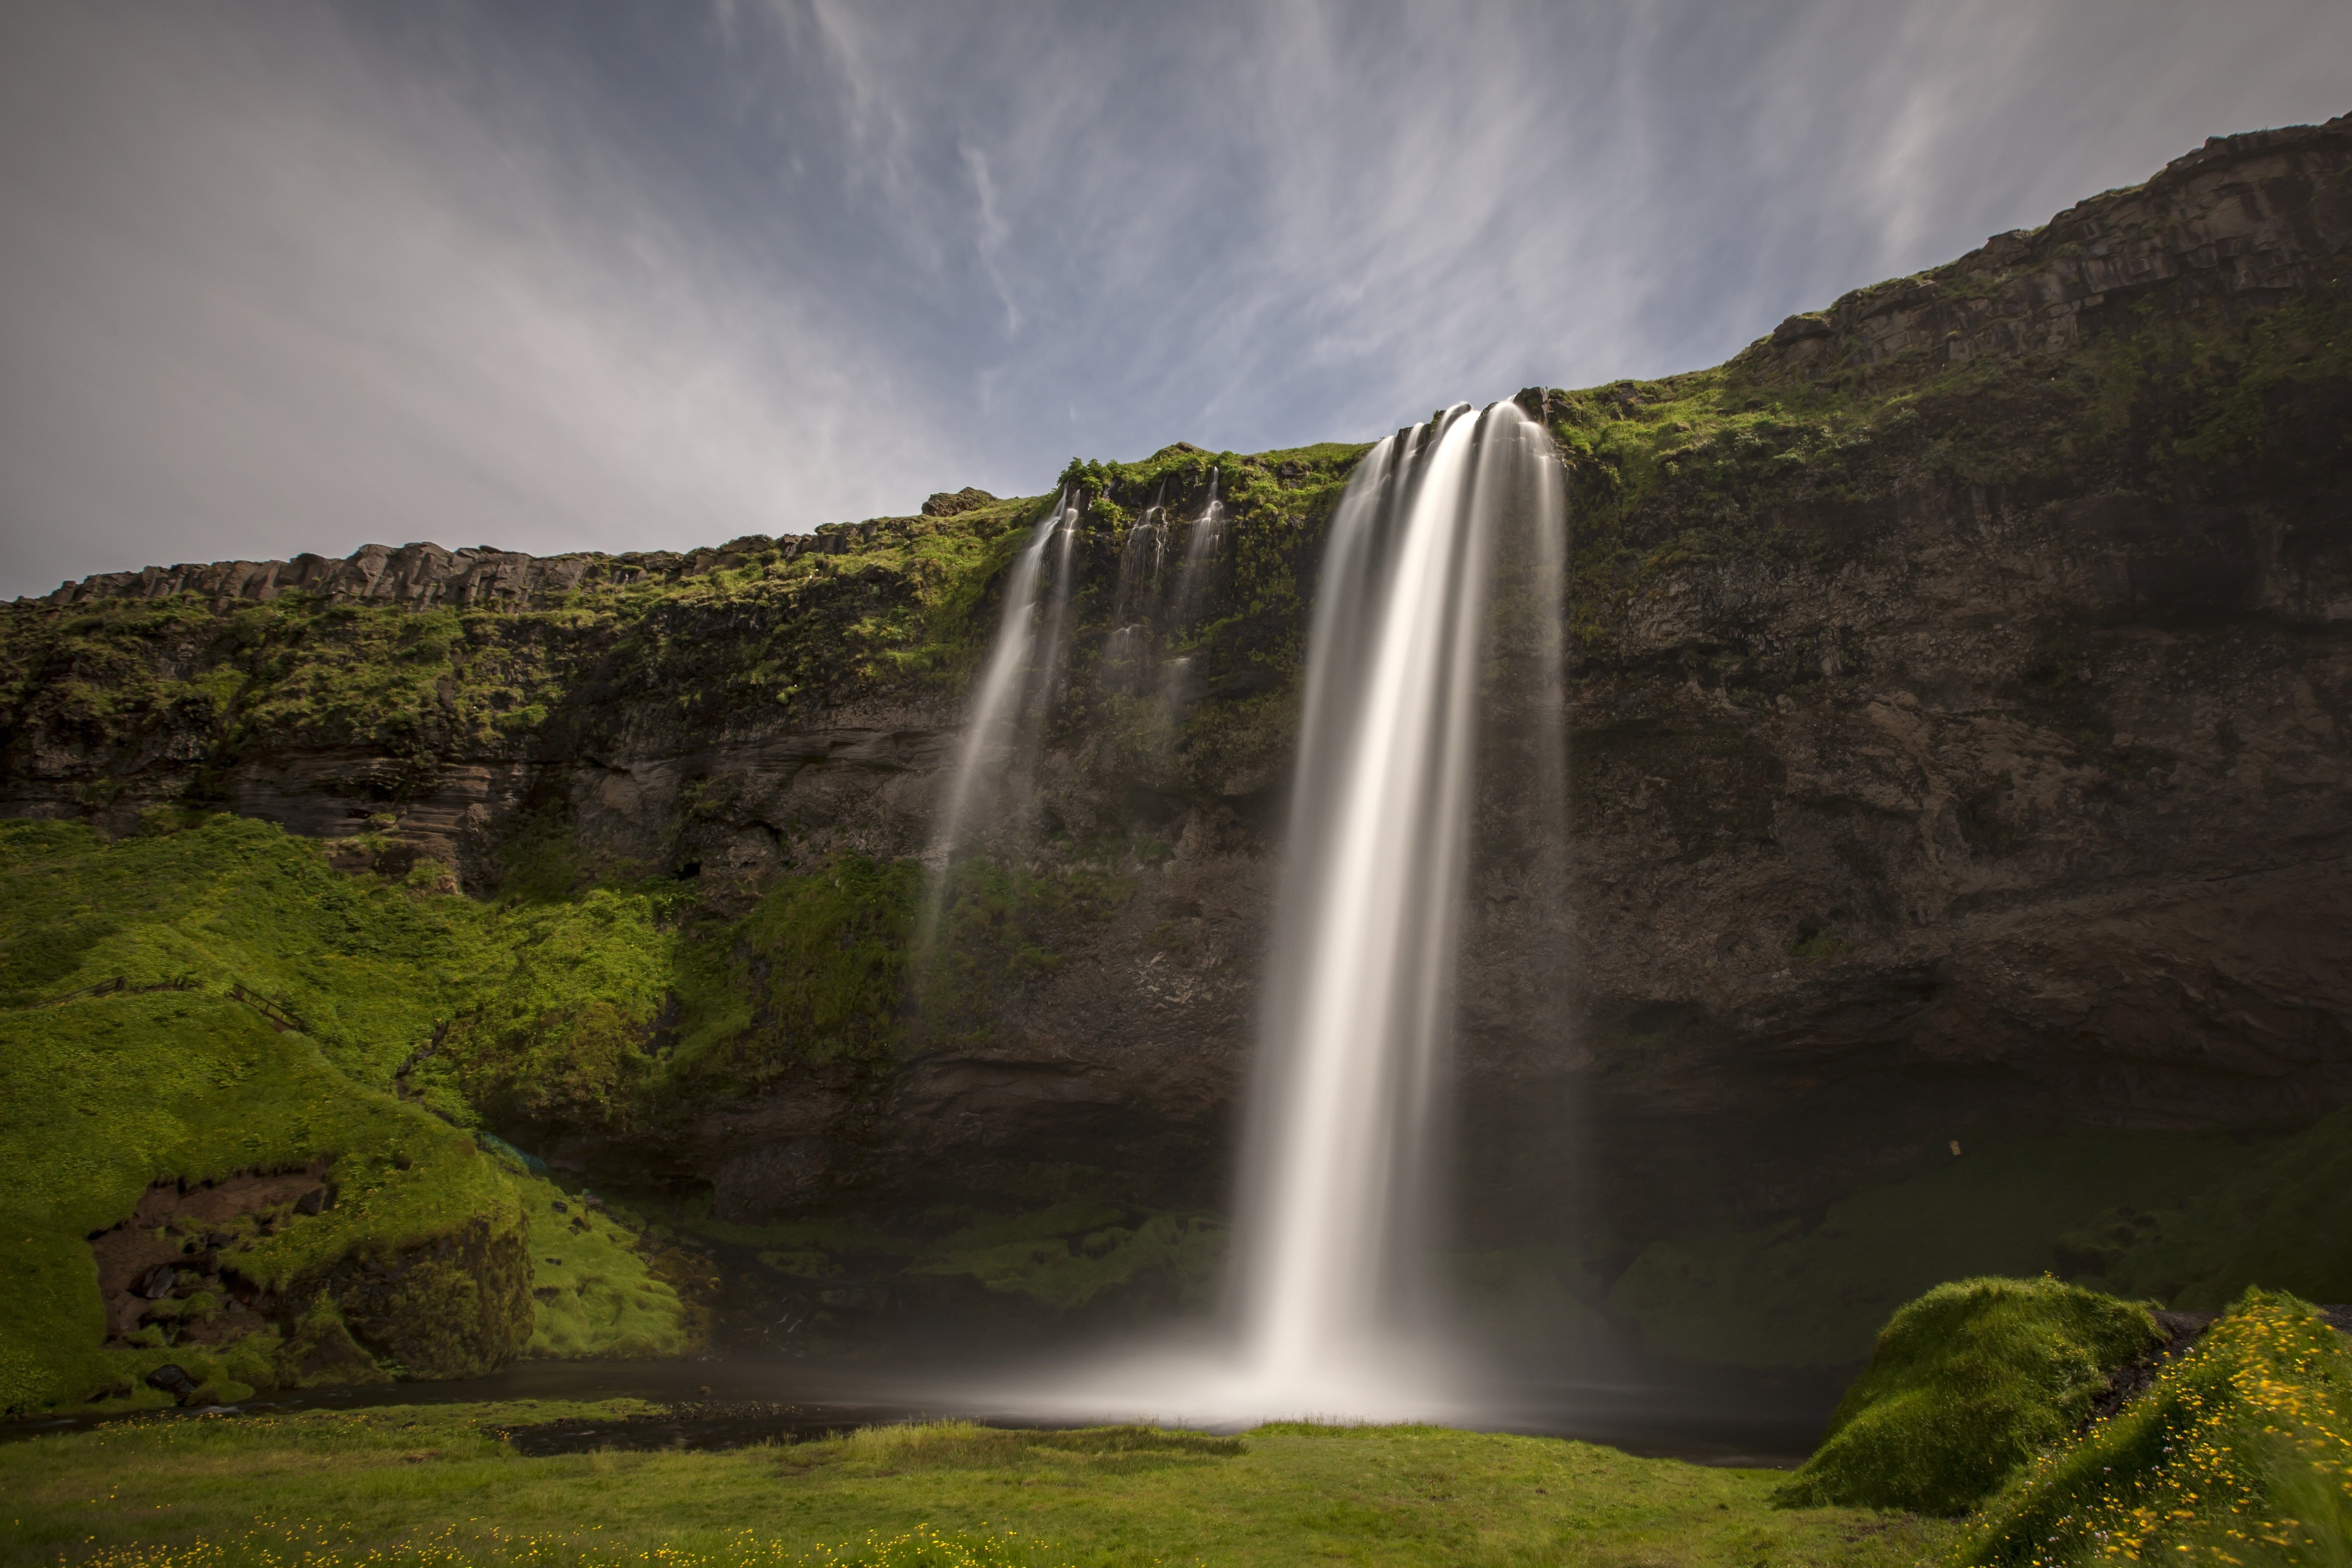 Влажный холм. Водопад Сельяландсфосс. Сельяландсфосс Исландия. Водопад Скоугафосс Исландия. Водопад Селйяландсфосс — самый известный водопад Исландии.